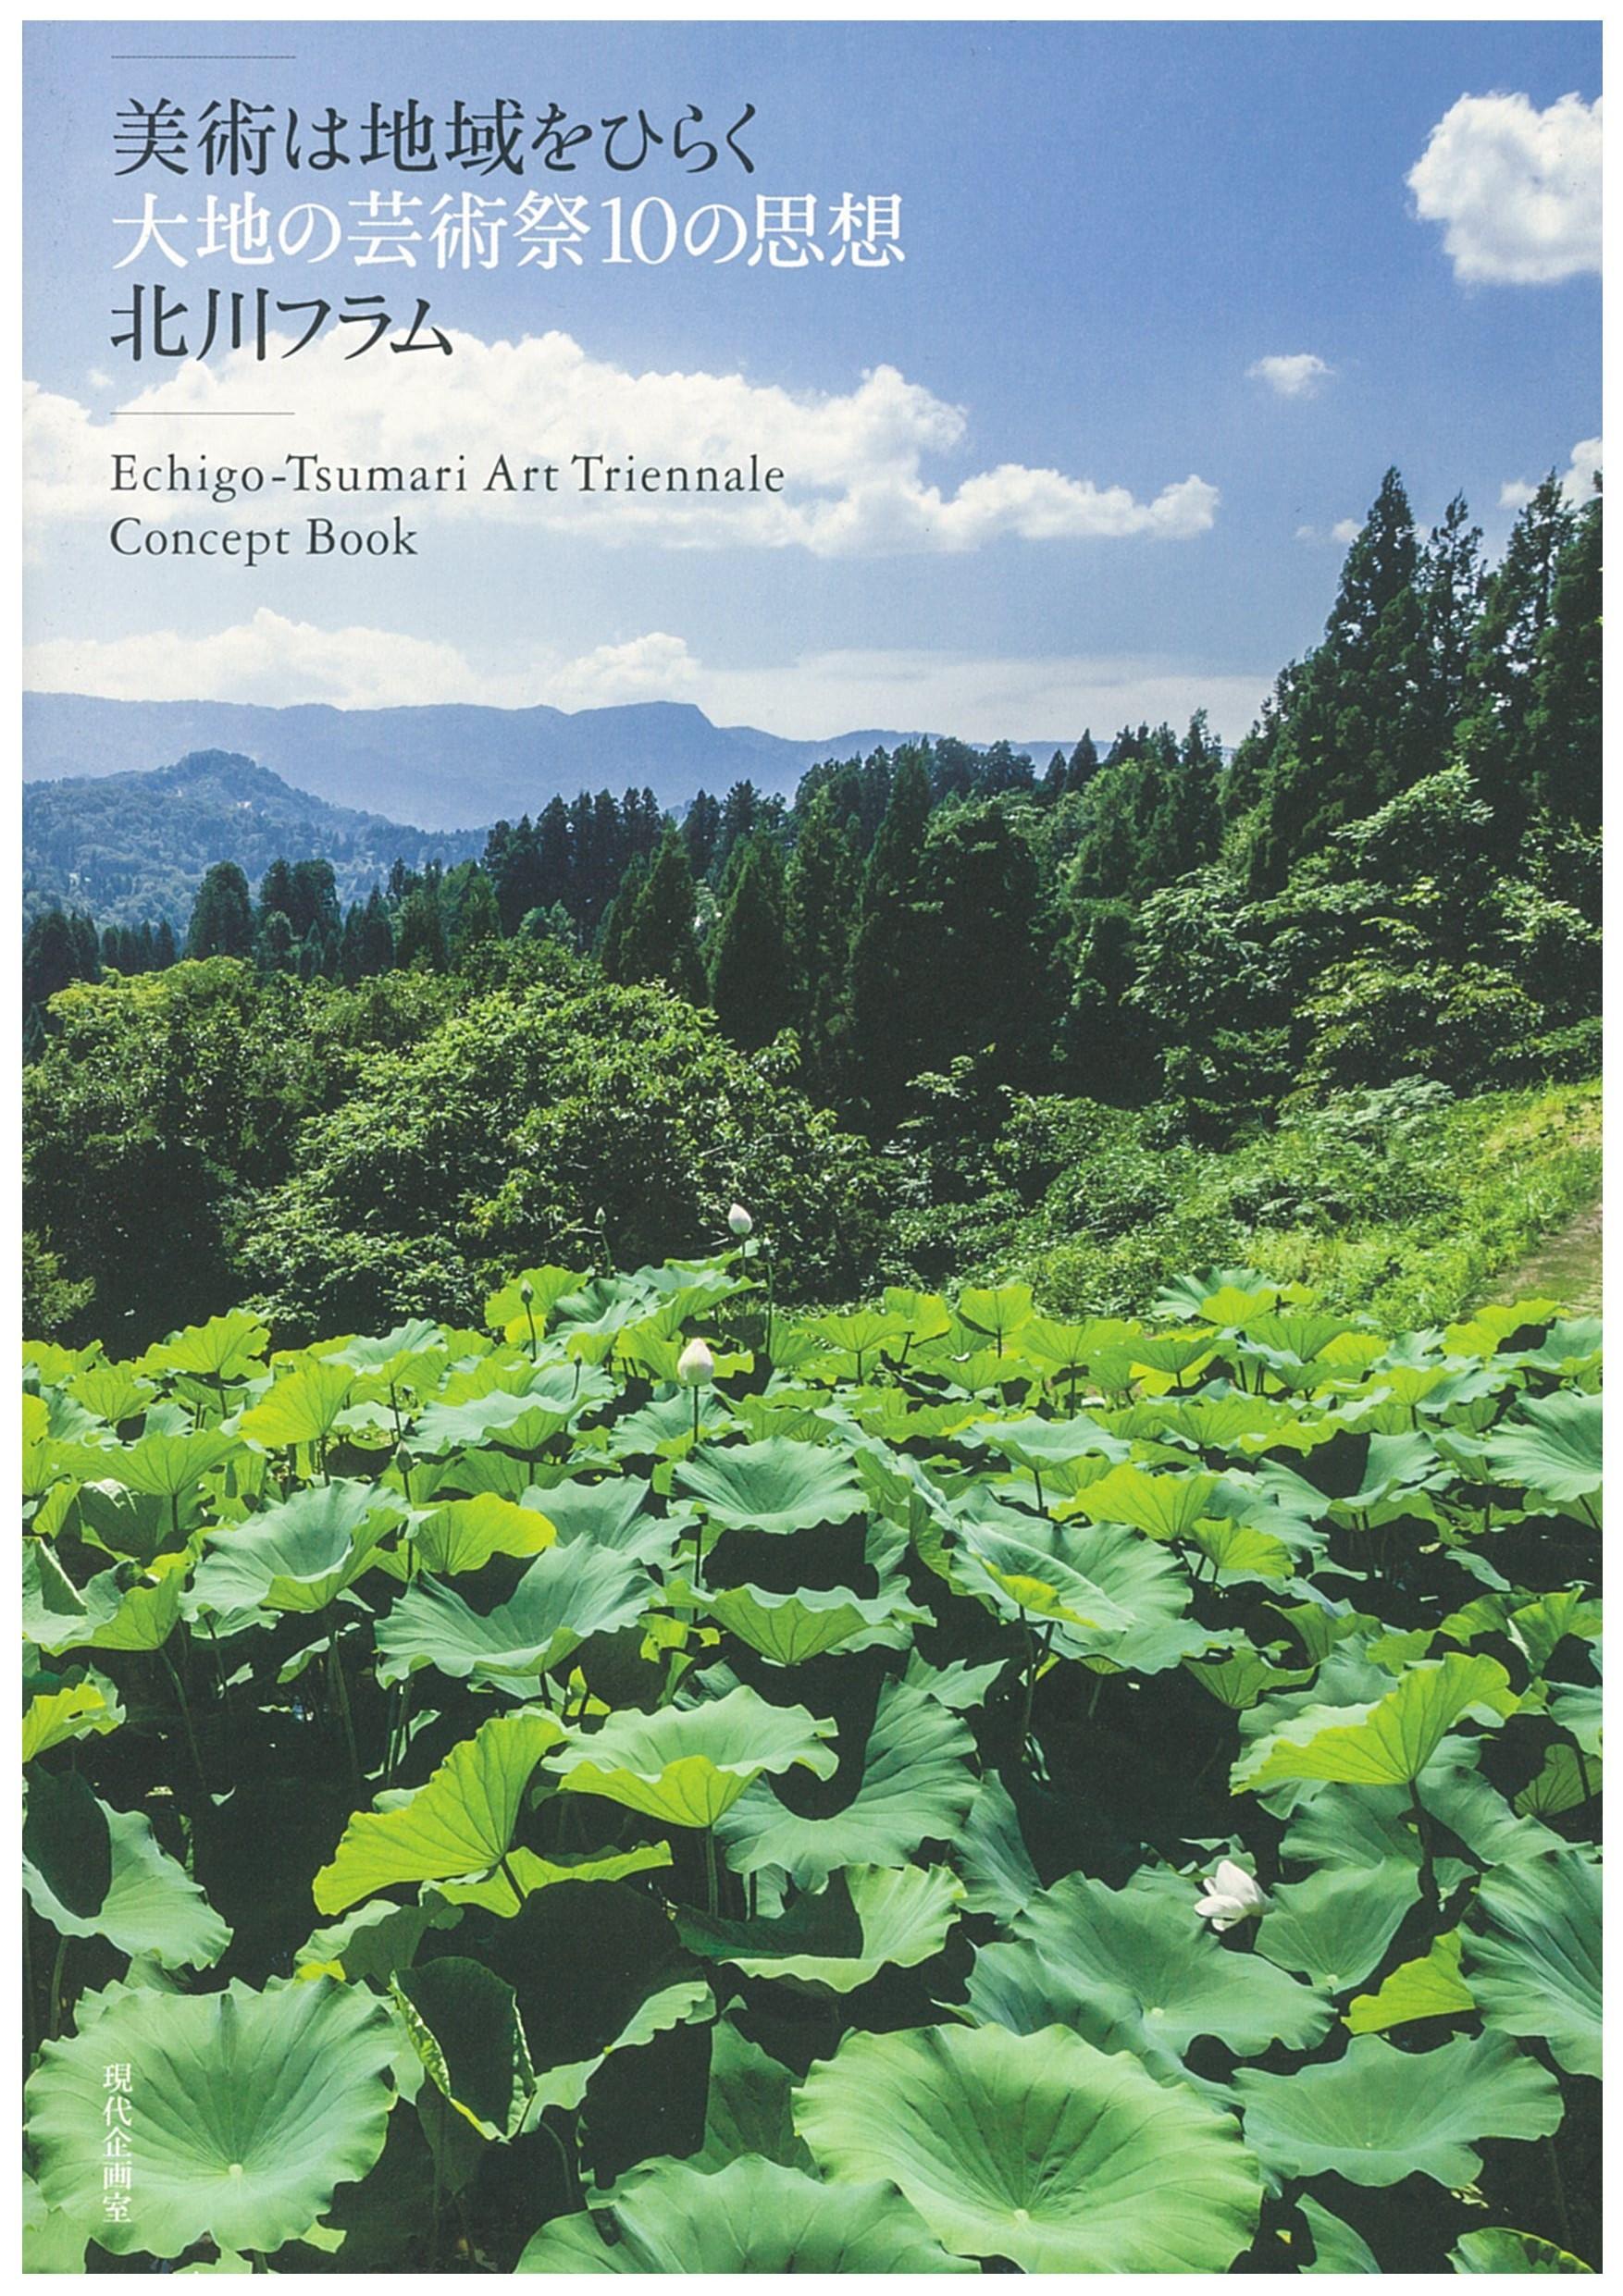 Echigo-Tsumari Art Triennial Concept Book